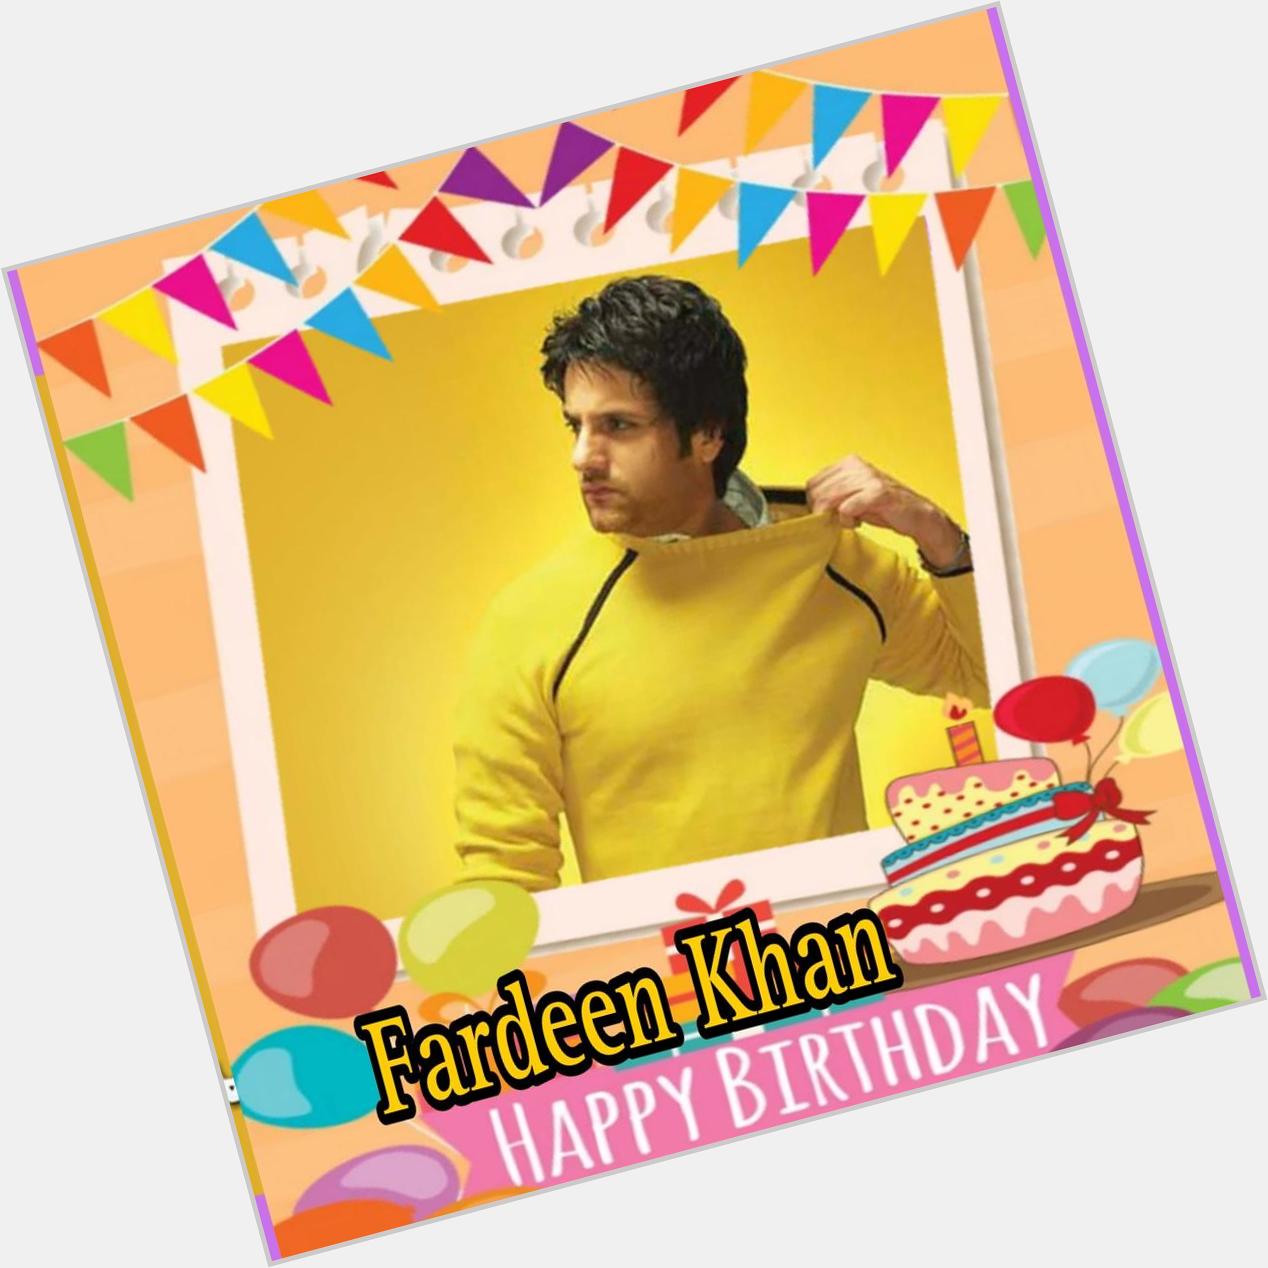 Happy Birthday Fardeen Khan   